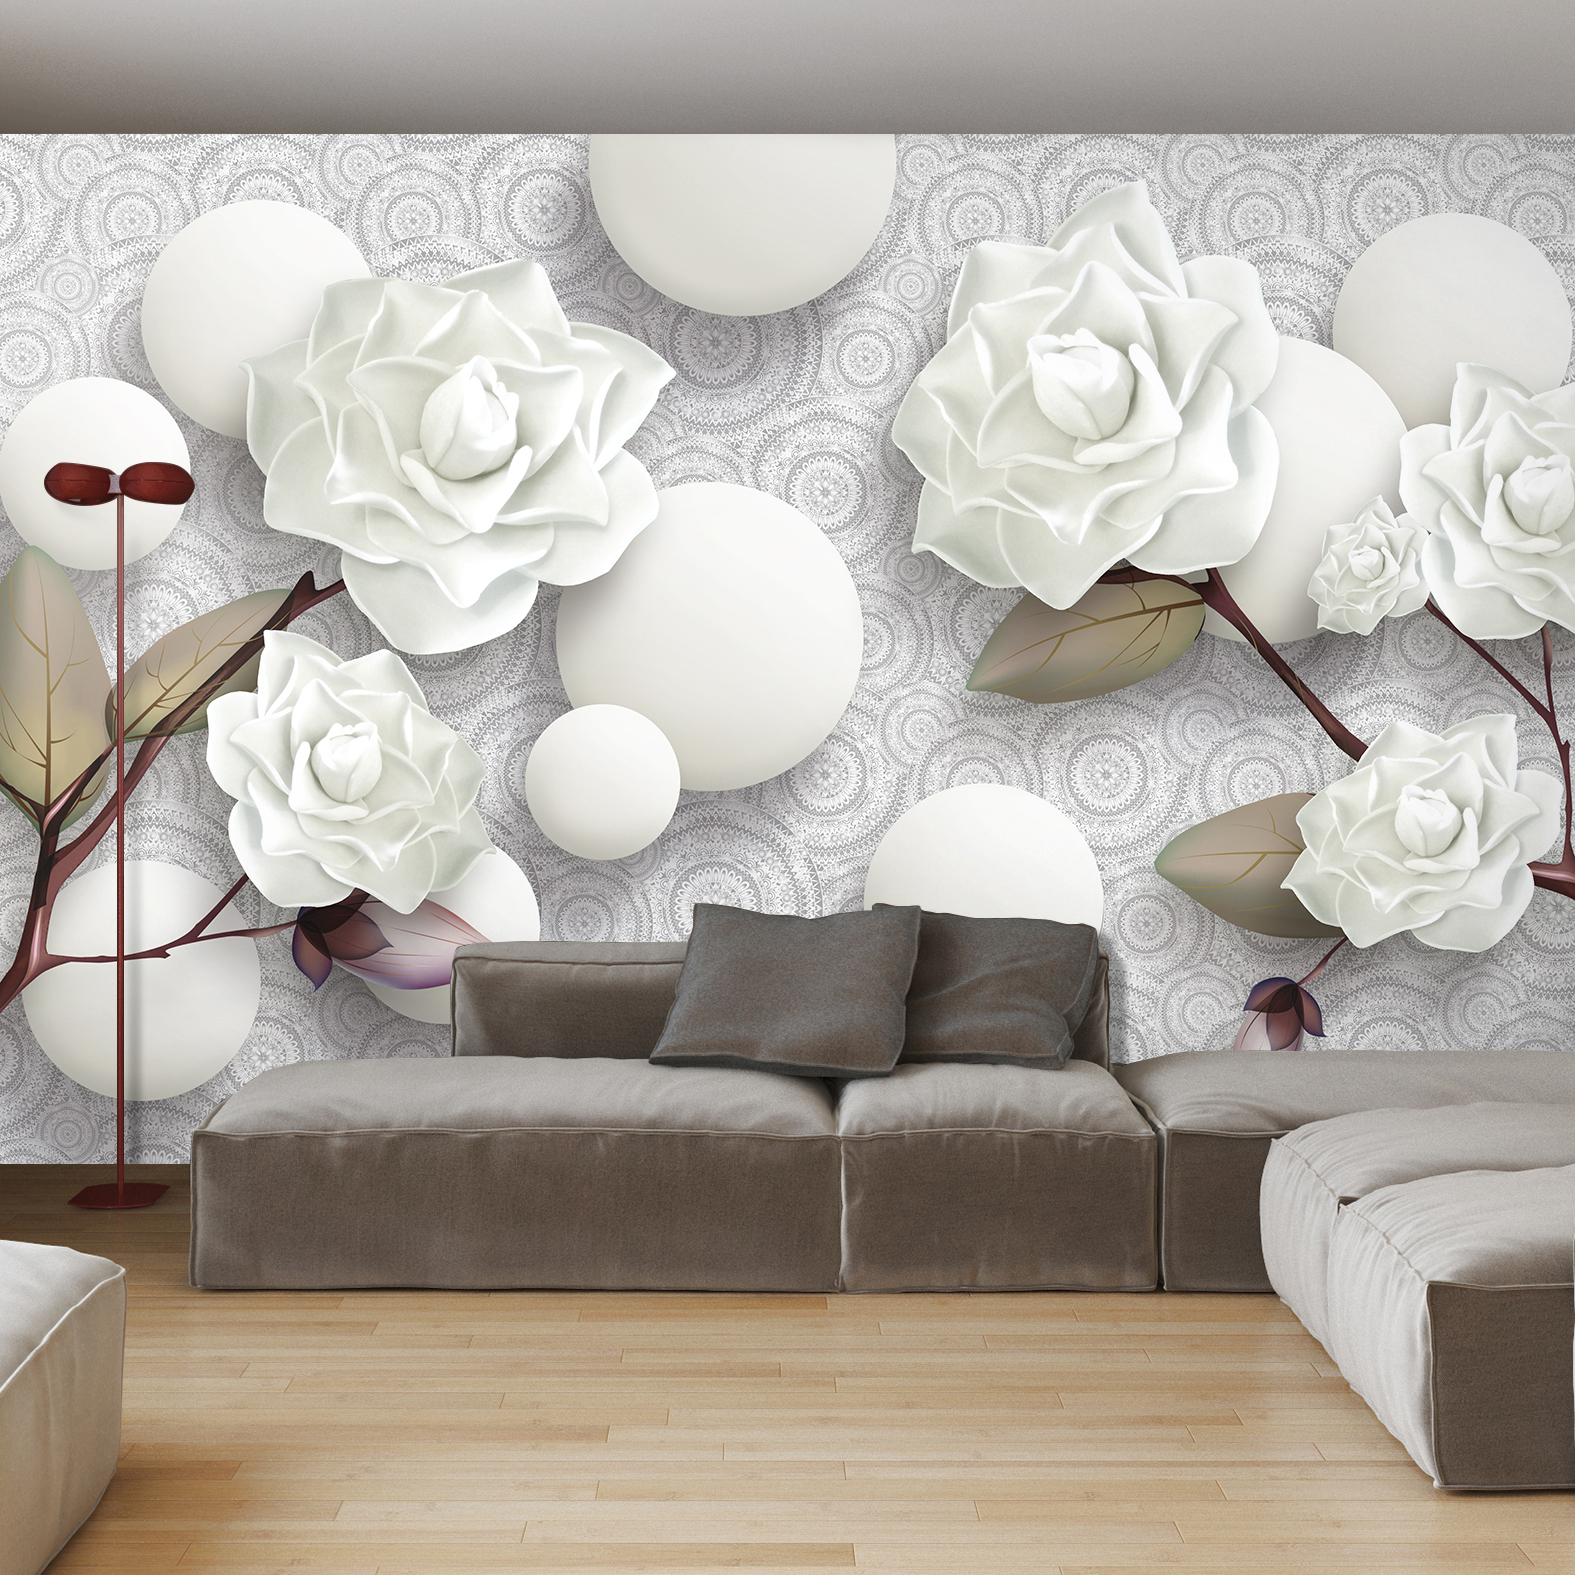 Фотообои Photostena 3D белые розы и шары 4,08 x 2,7 м грузди таёжный сбор белые 500 гр